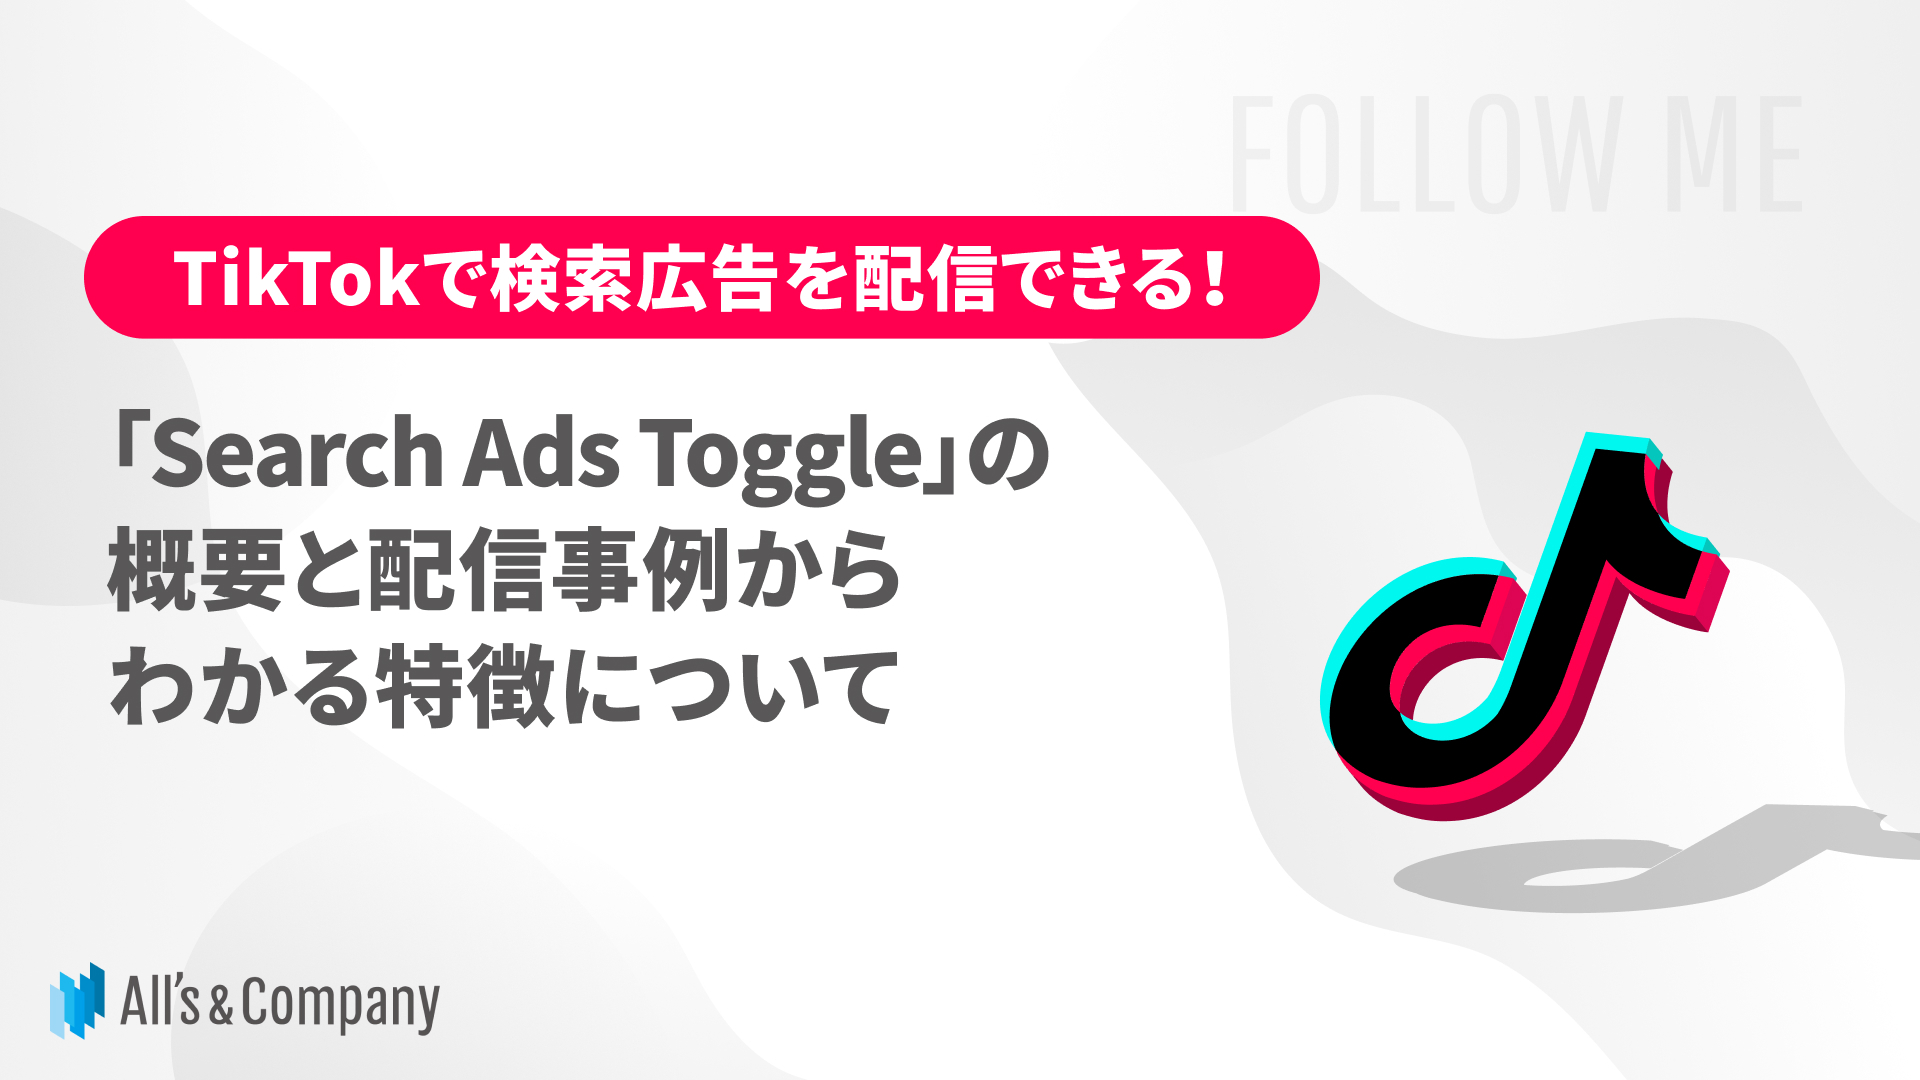 TikTokで検索広告を配信できる！「Search Ads Toggle」の概要と配信事例からわかる特徴について